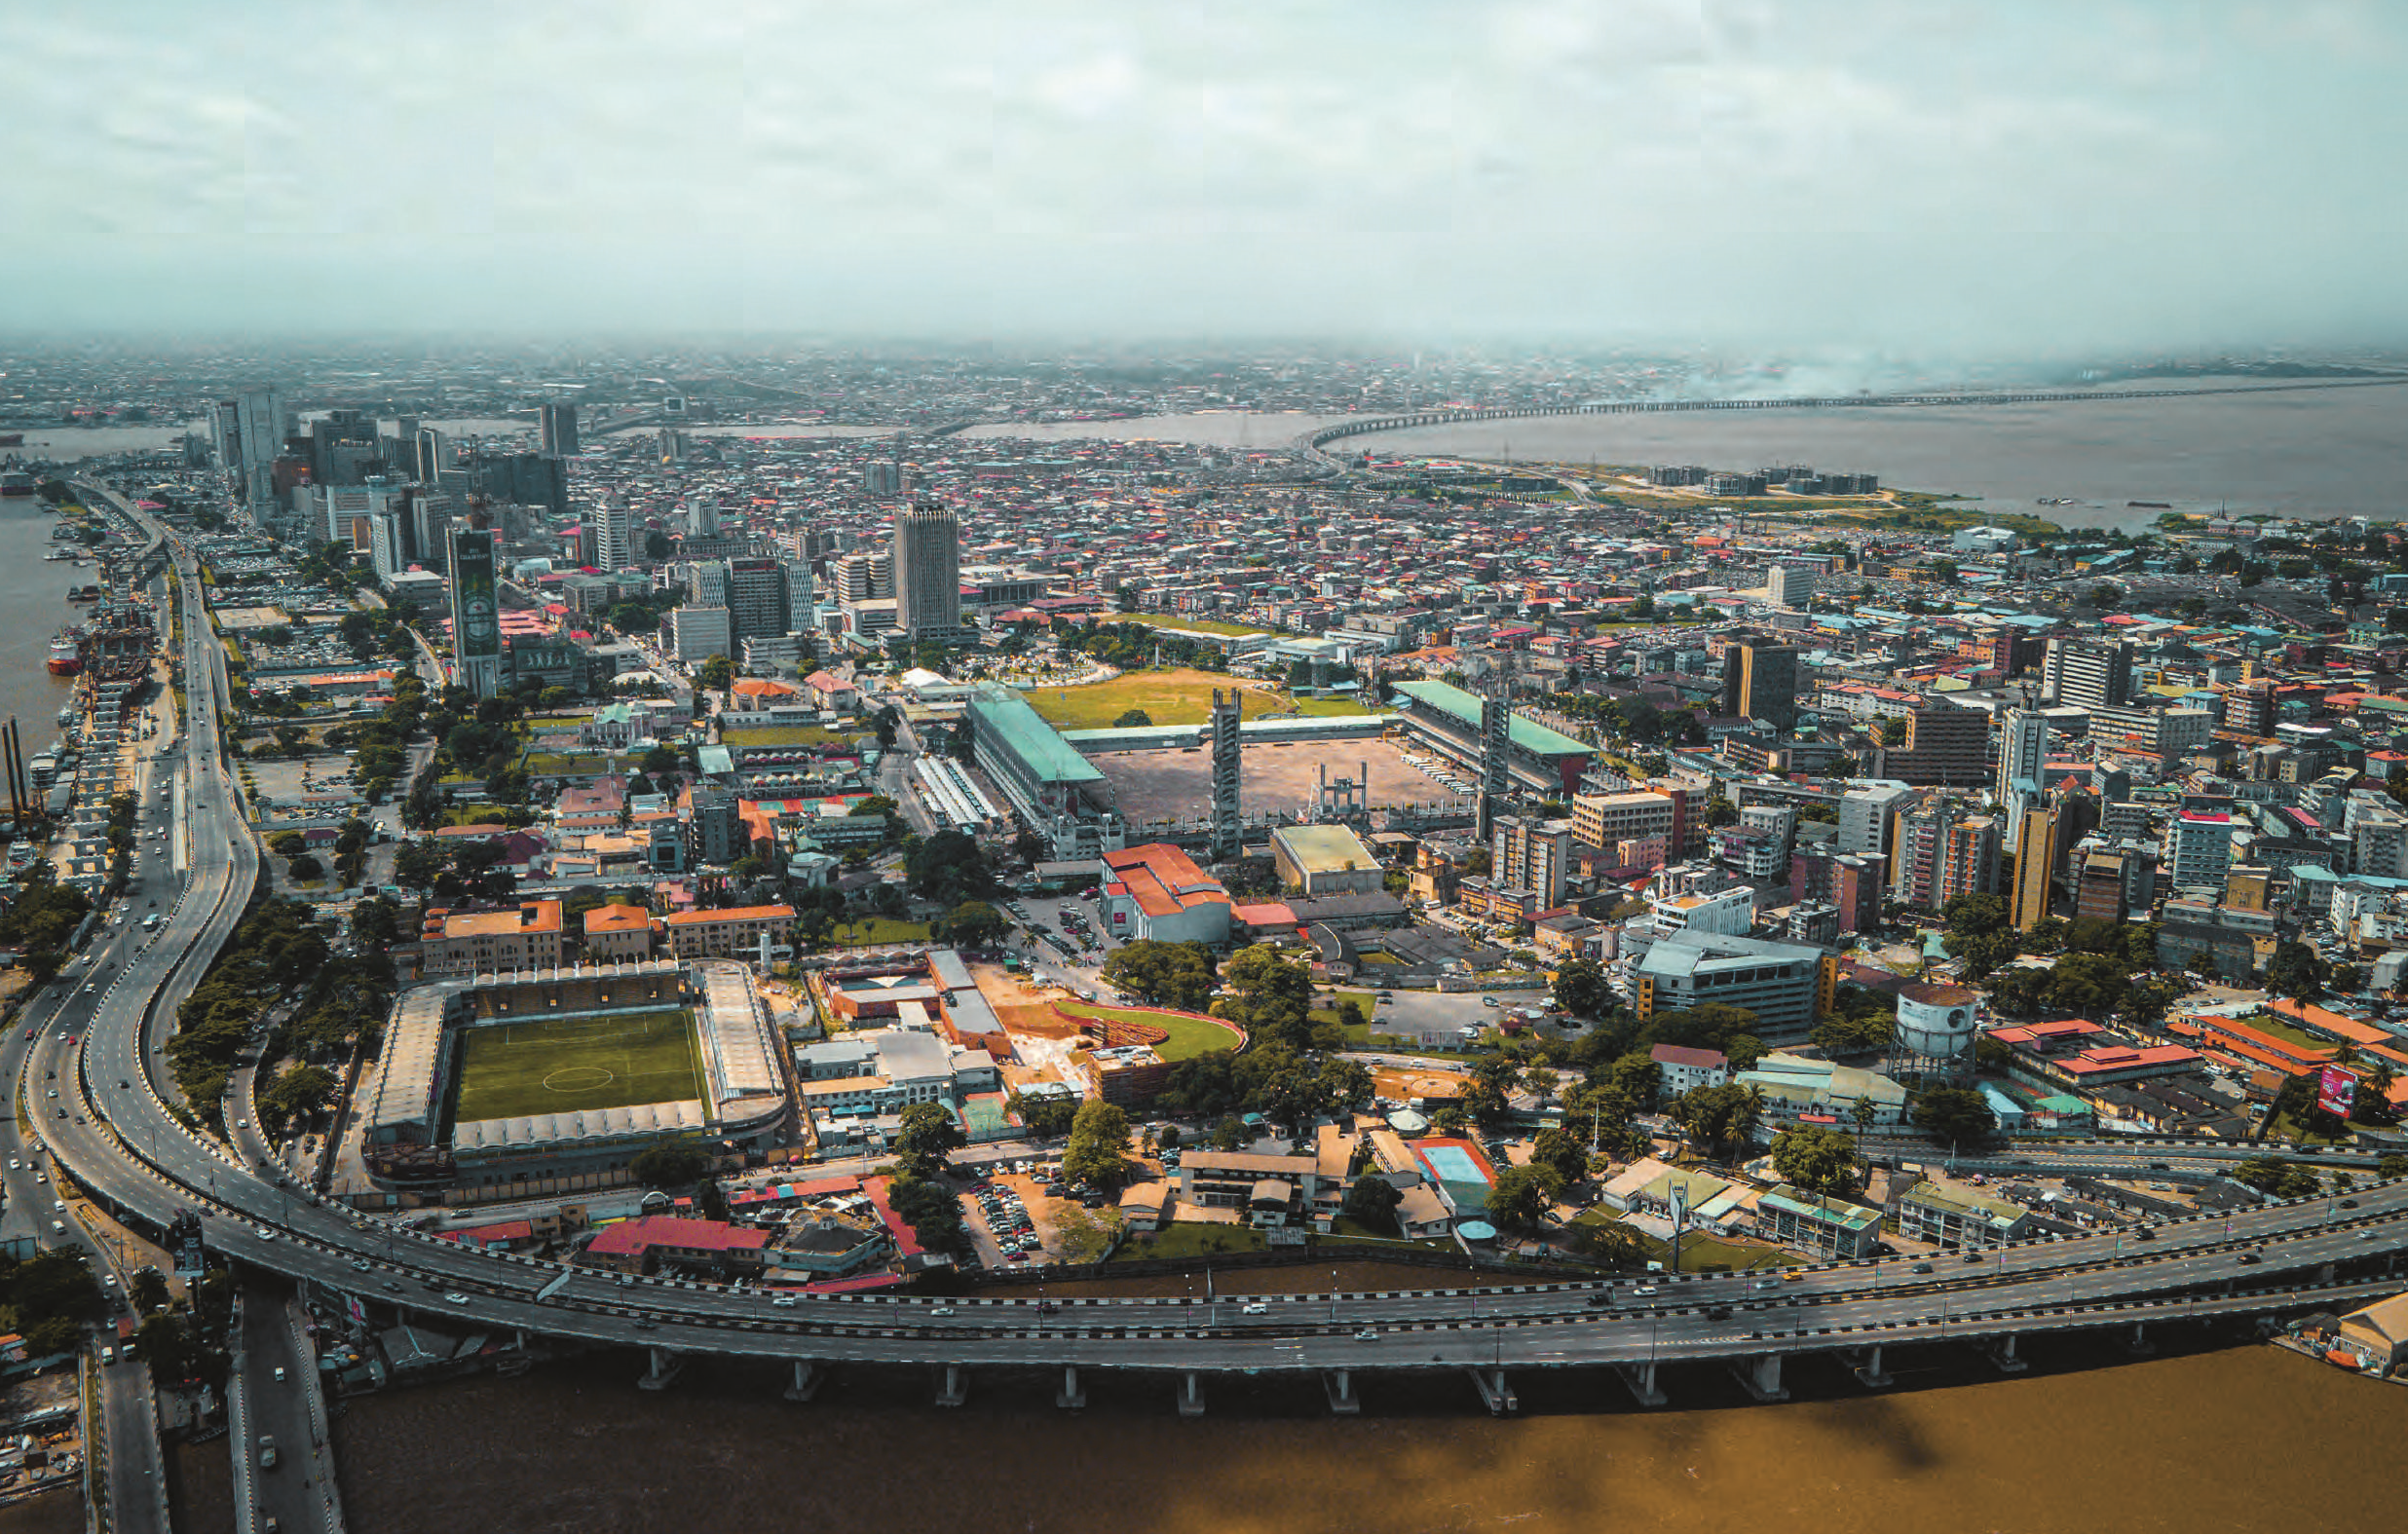 La géante Lagos, qui compte 22 millions d’habitants. SHUTTERSTOCK